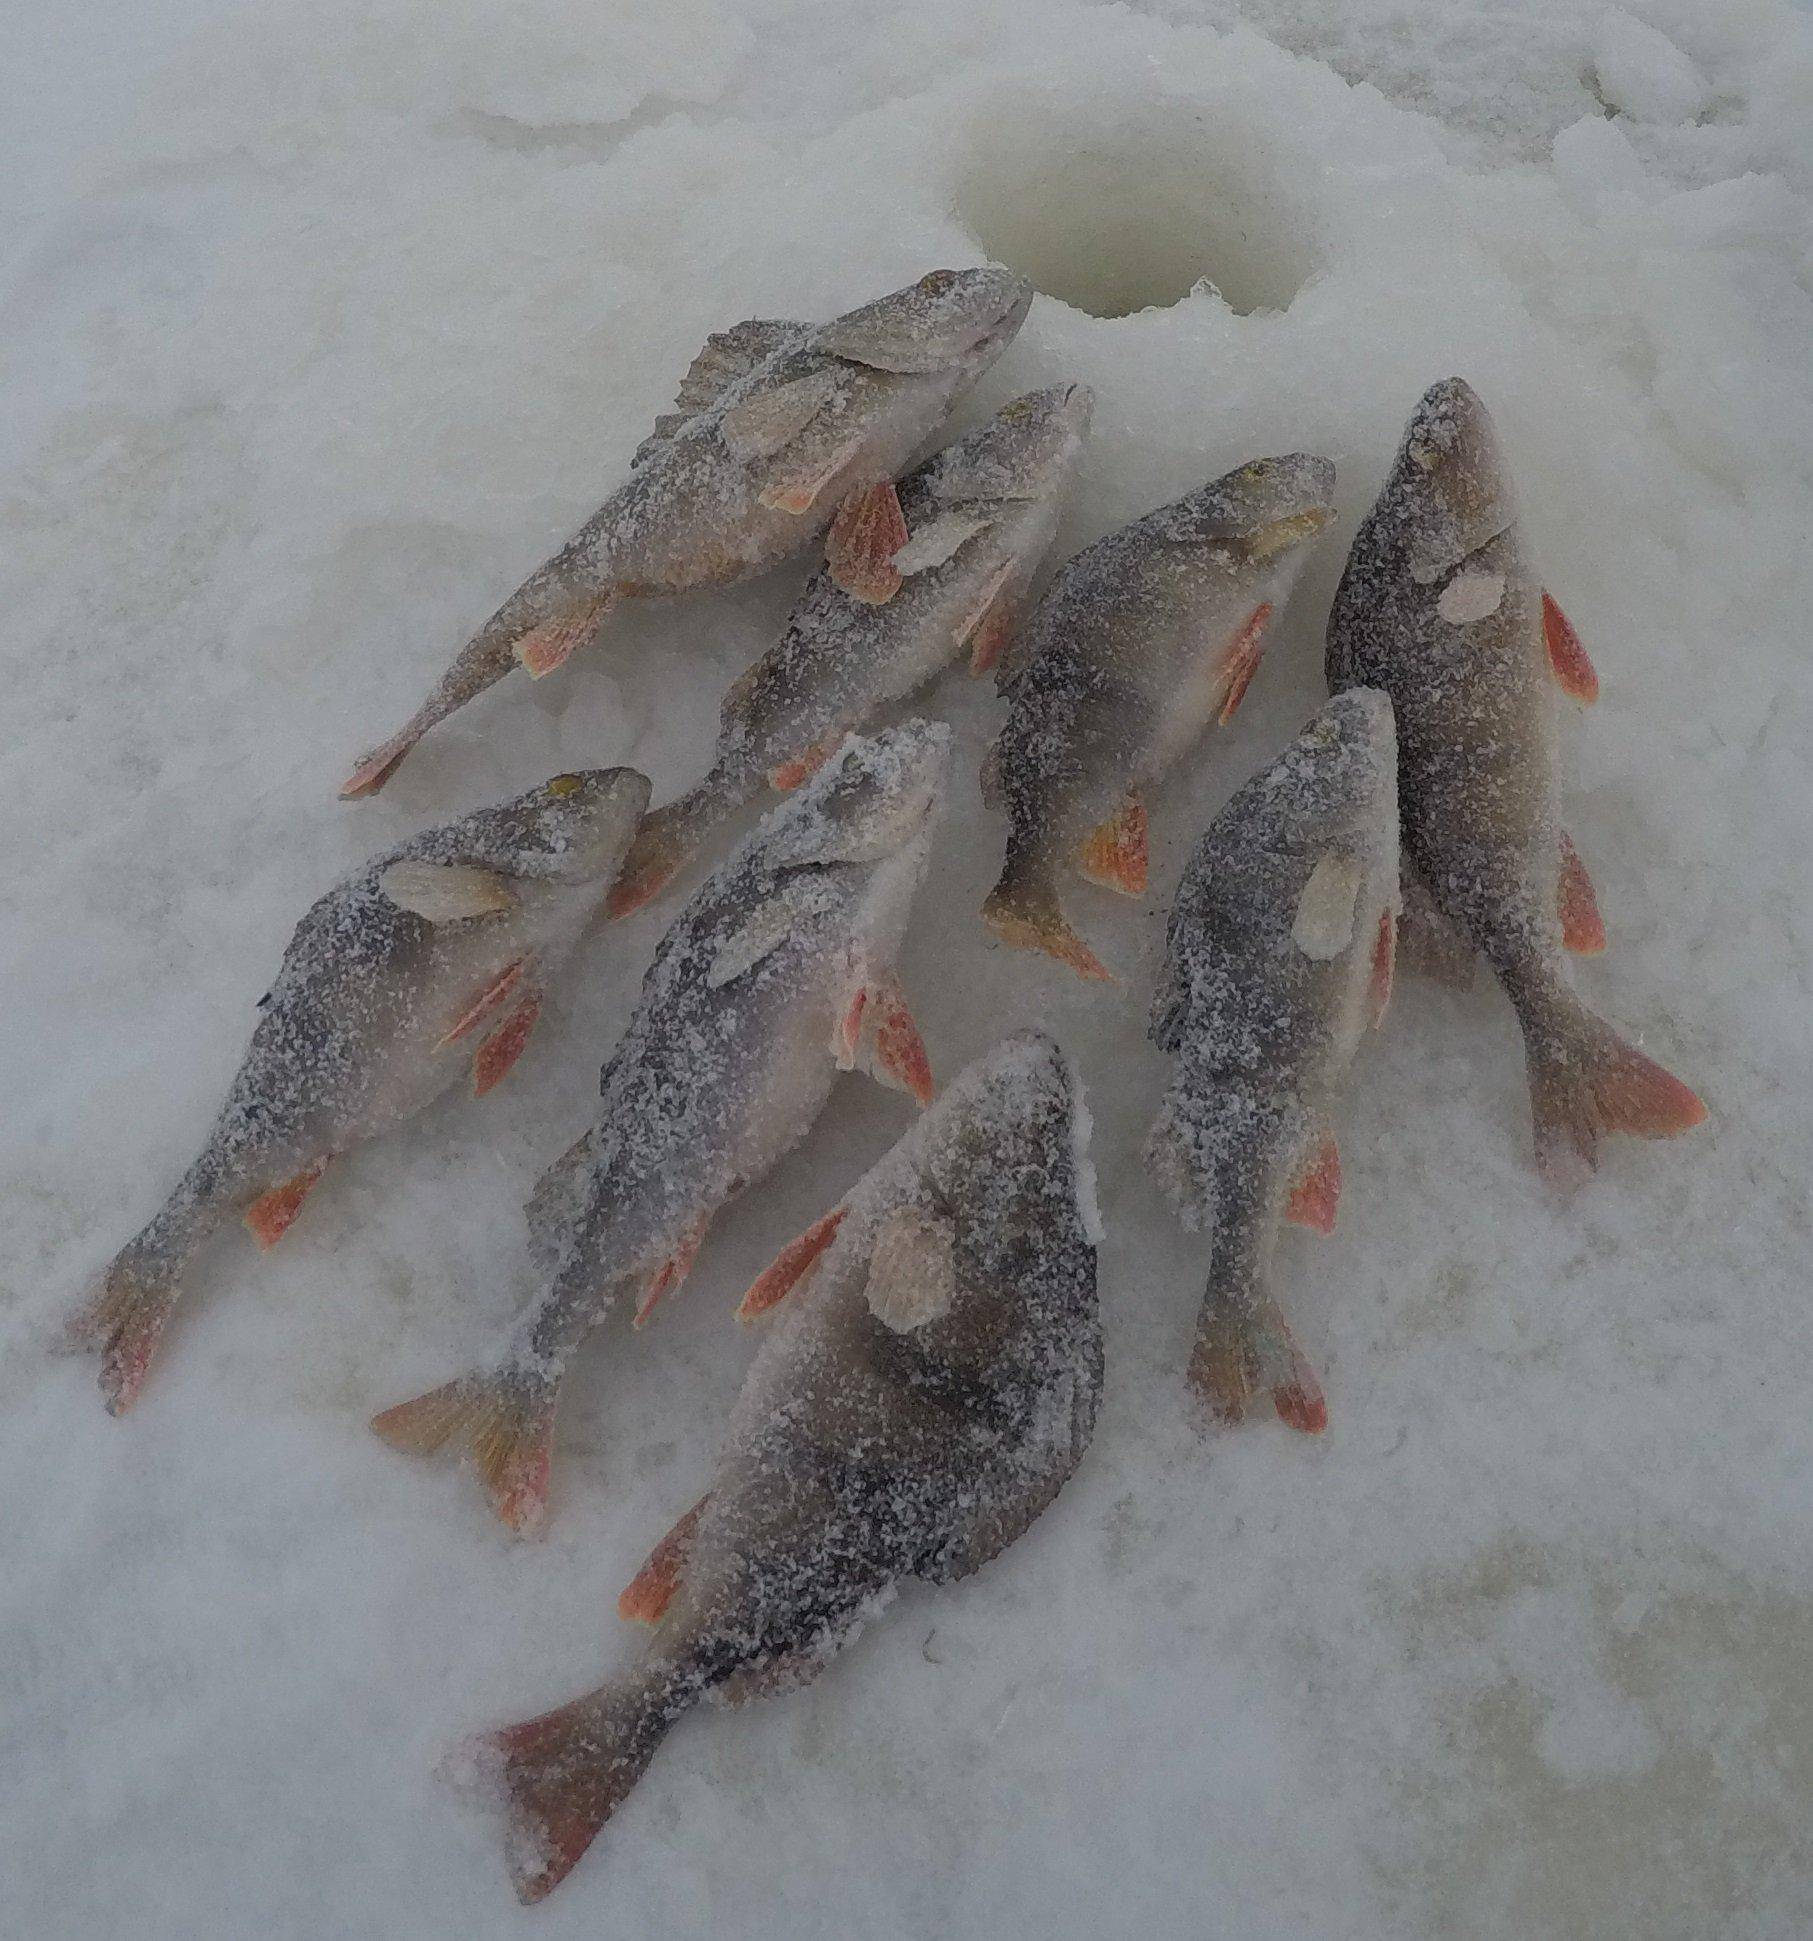 Рыбалка в глухозимье – способы ловли в зависимости от вида рыбы и советы новичкам